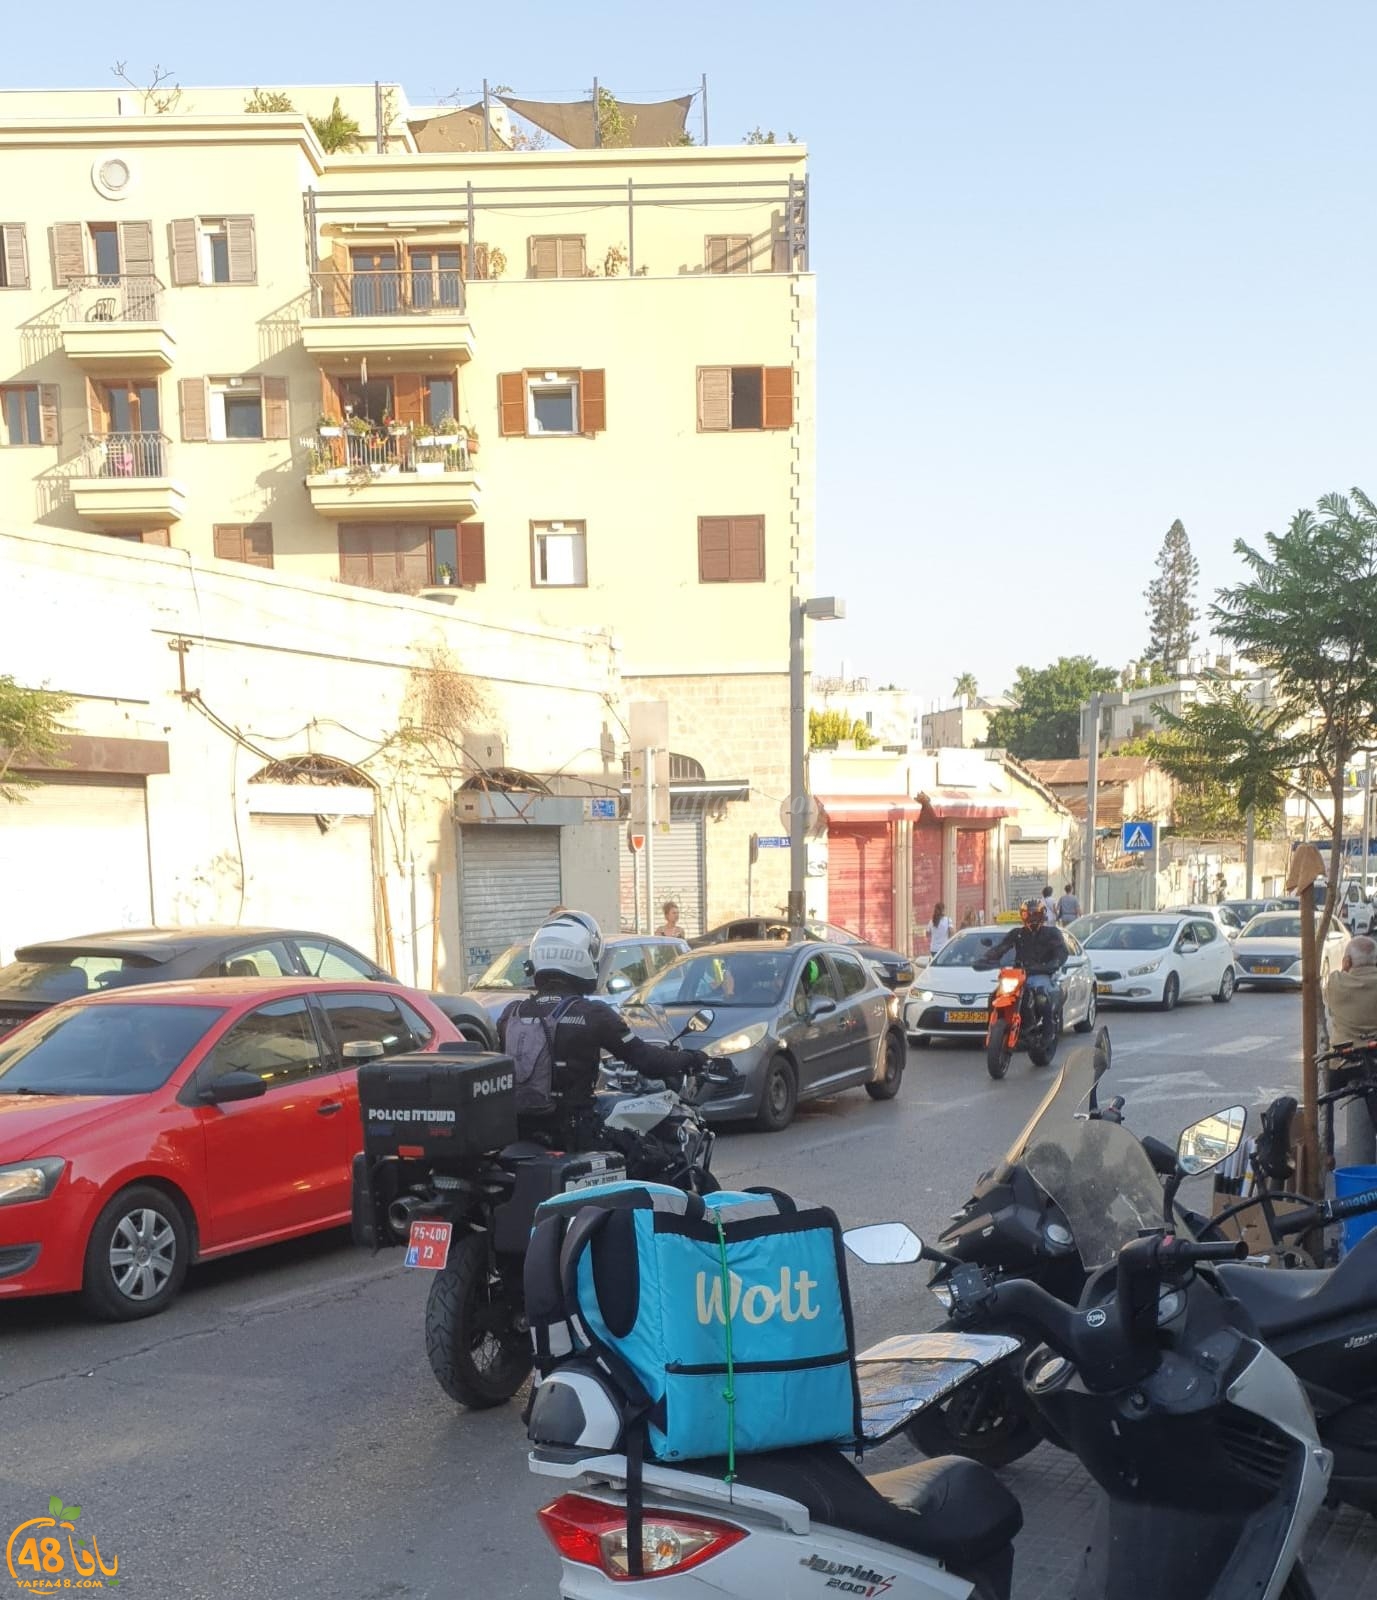   يافا: الشرطة تشّن حملة لتحرير المخالفات في شوارع المدينة